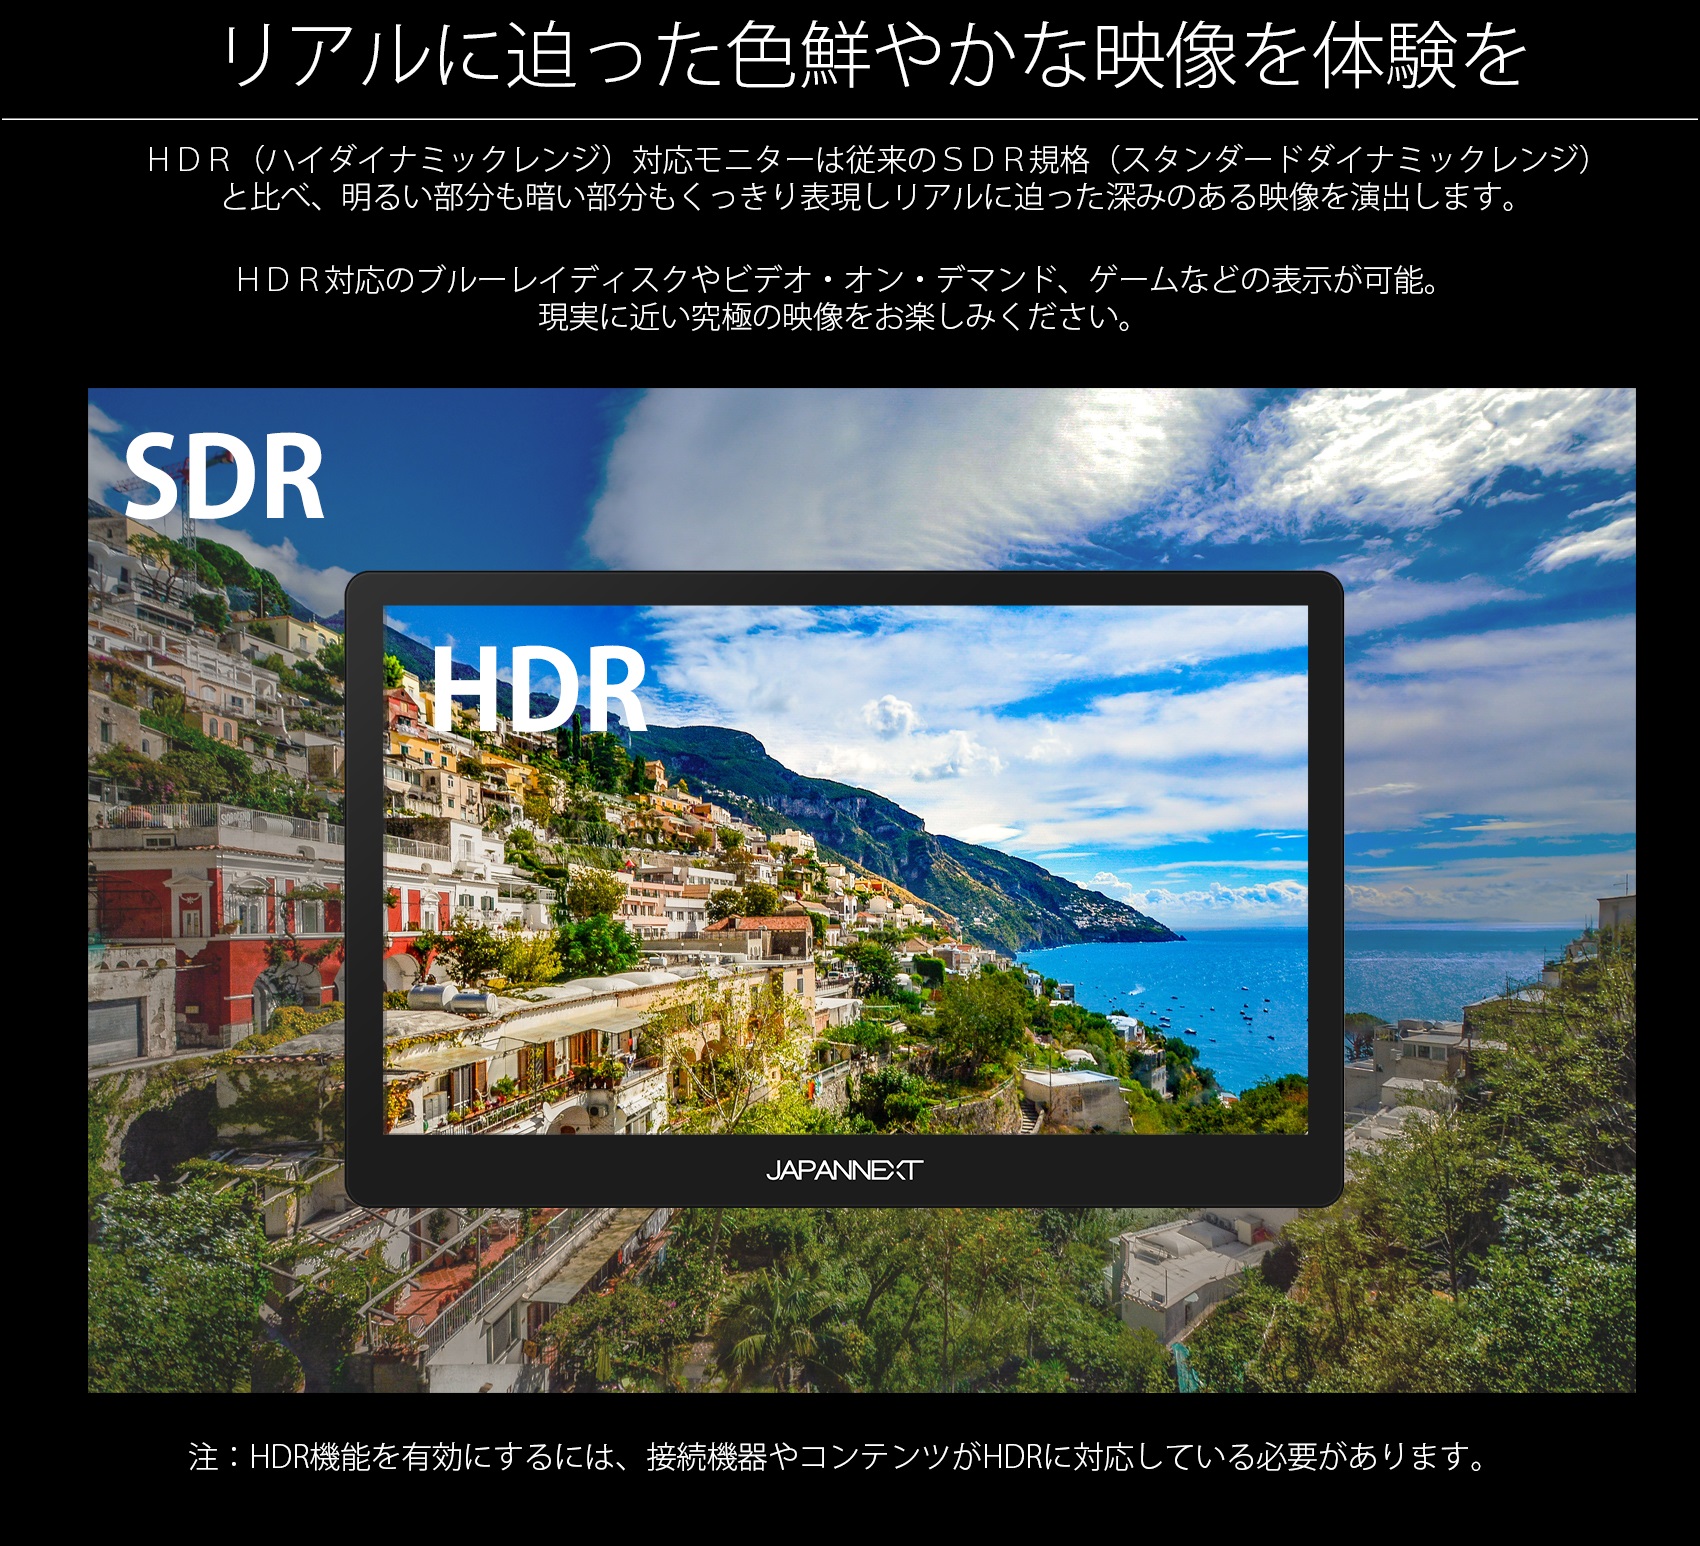 HDR対応でSDRより画質がよい。